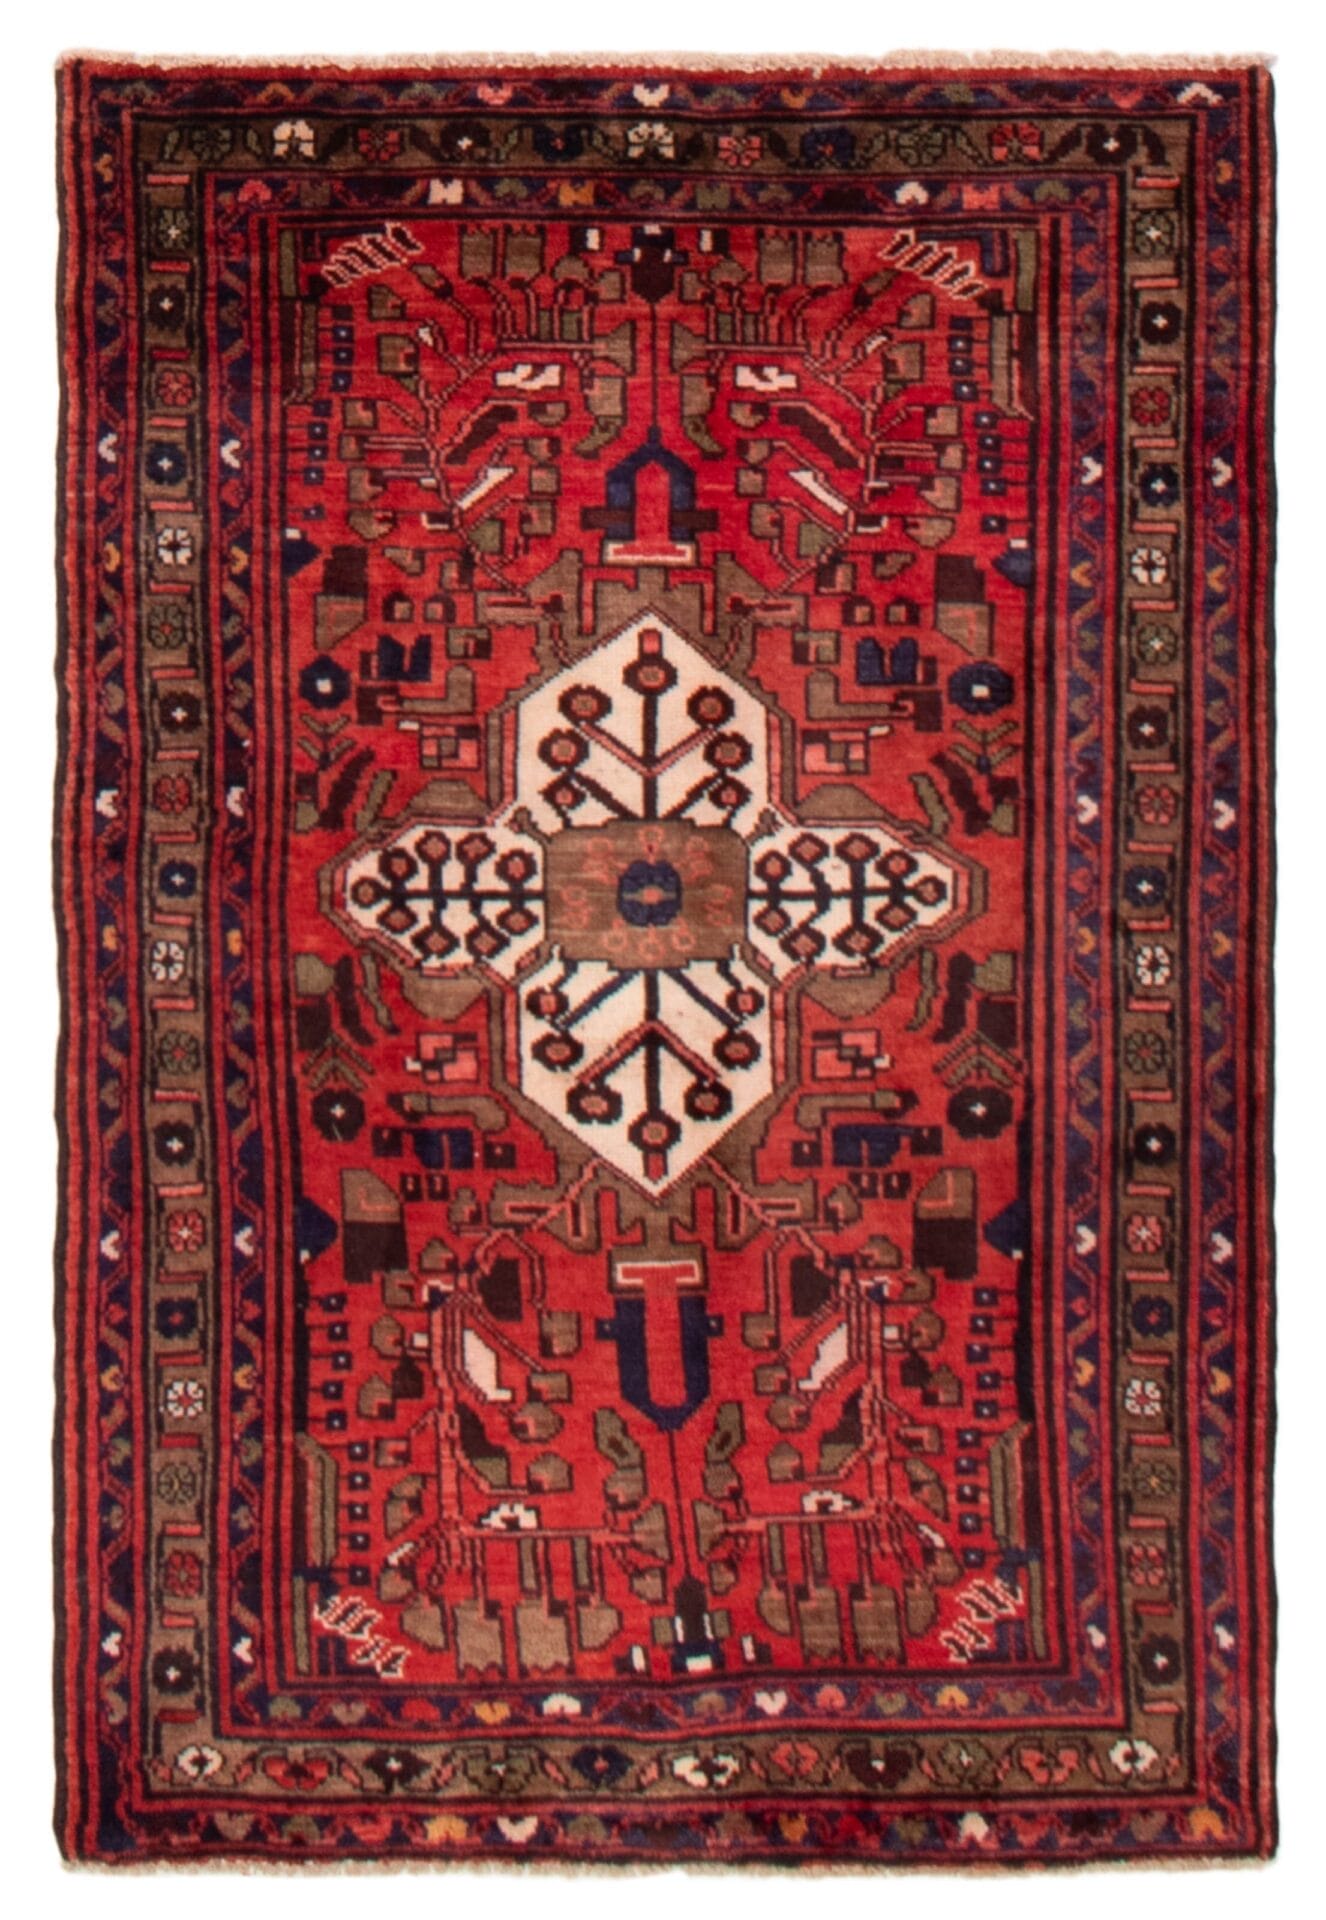 Een rood en bruin tapijt met een ornamentaal ontwerp.